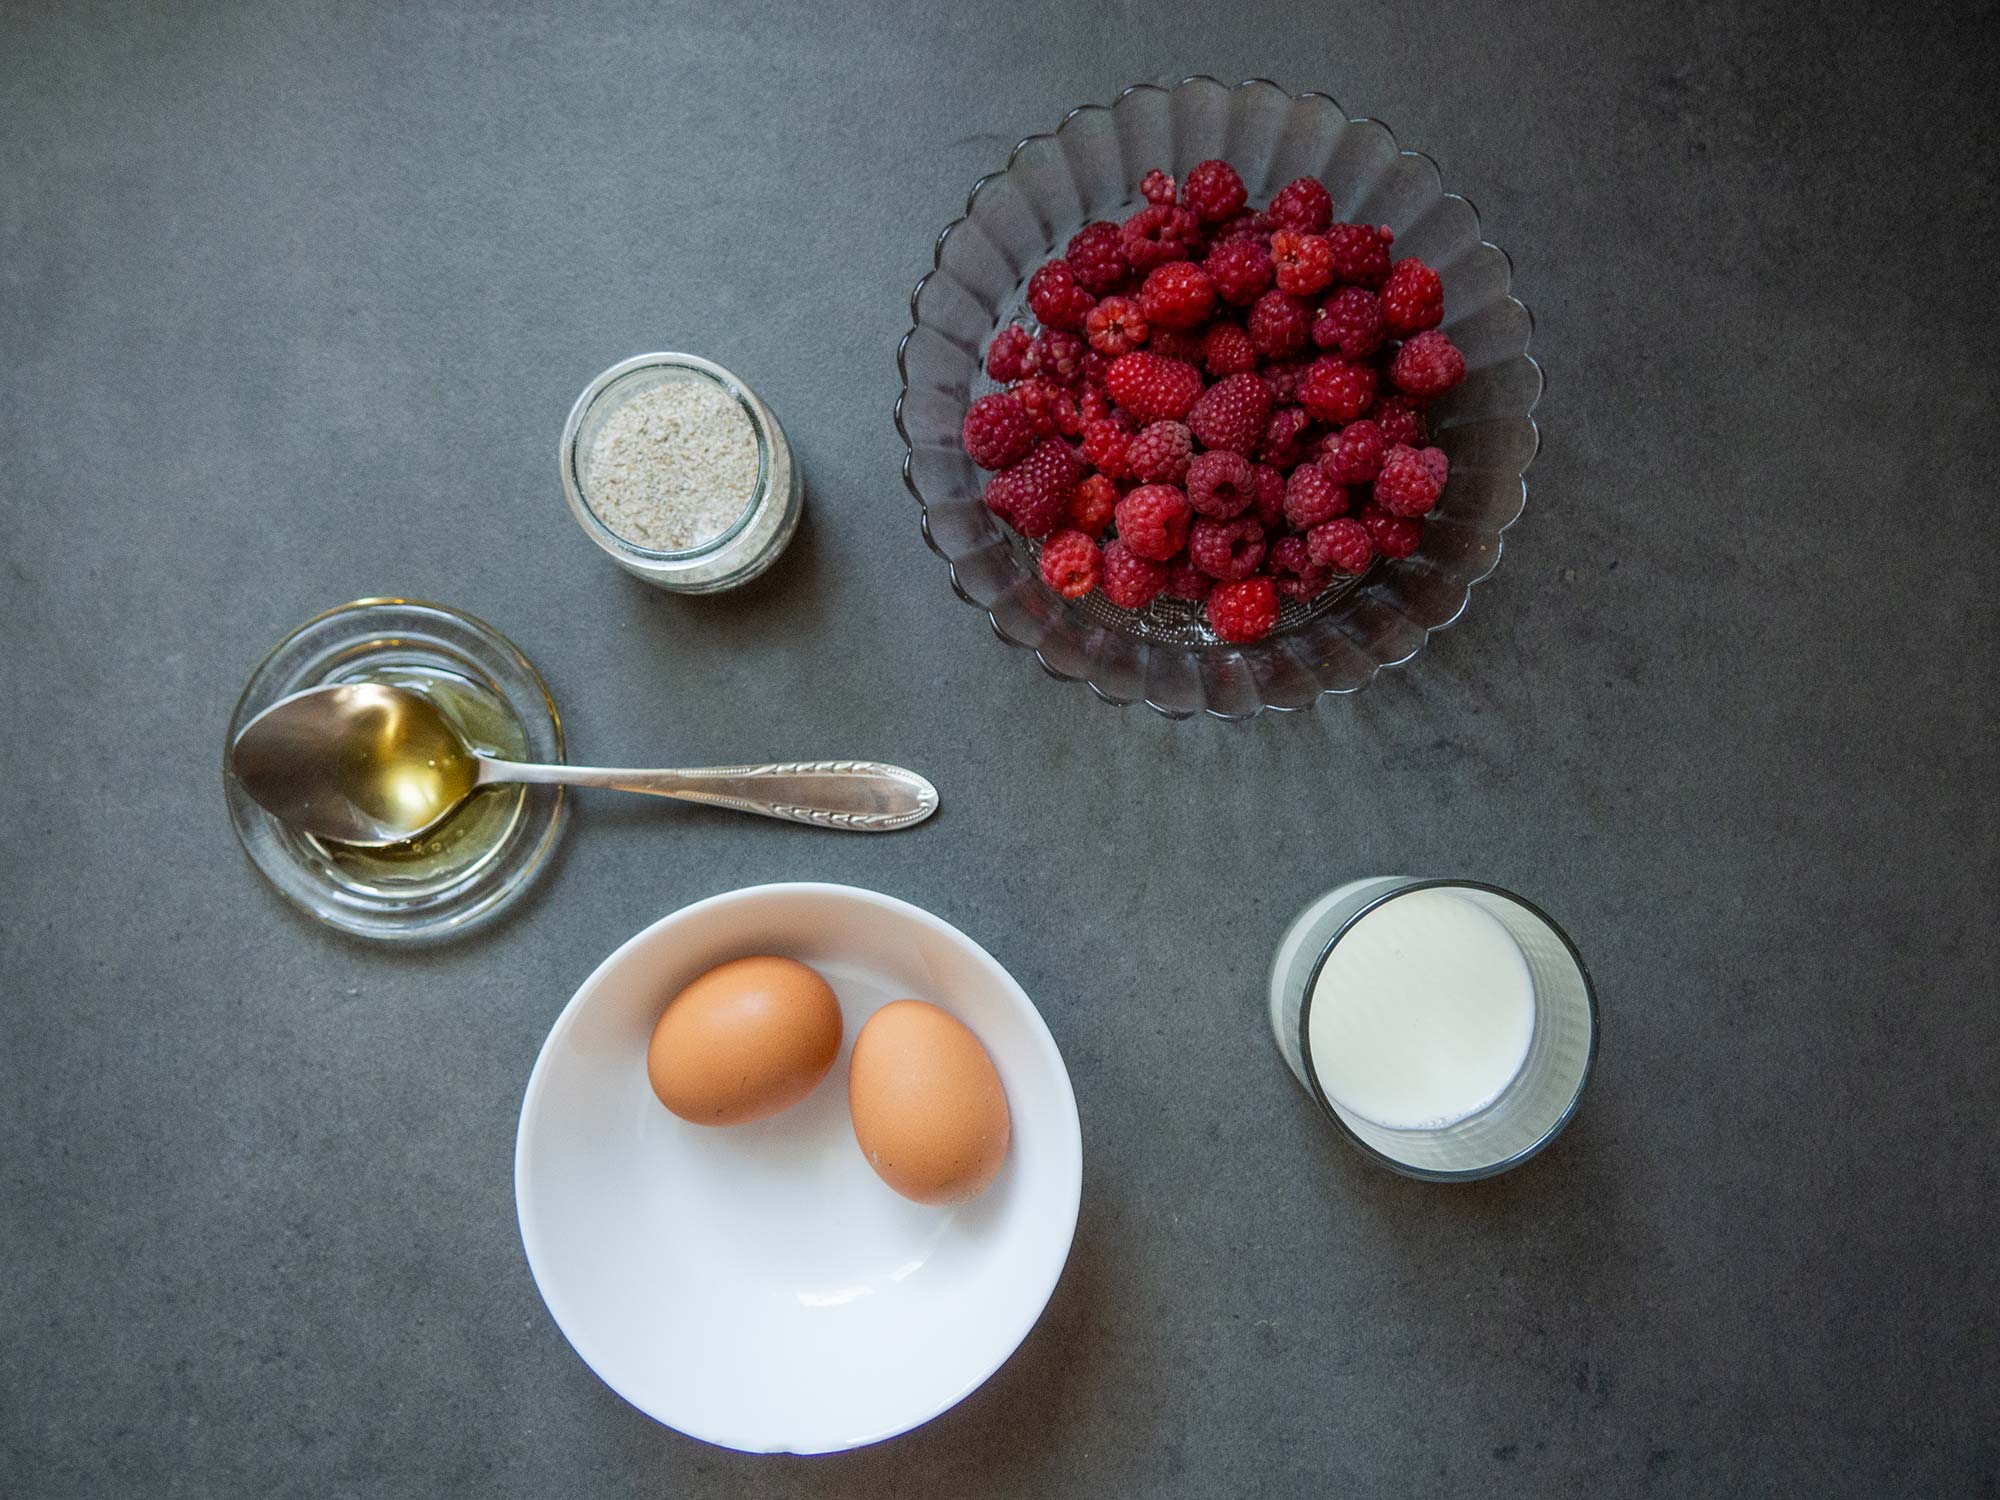 Ingredient: raspberries, eggs, milk, oil, sal